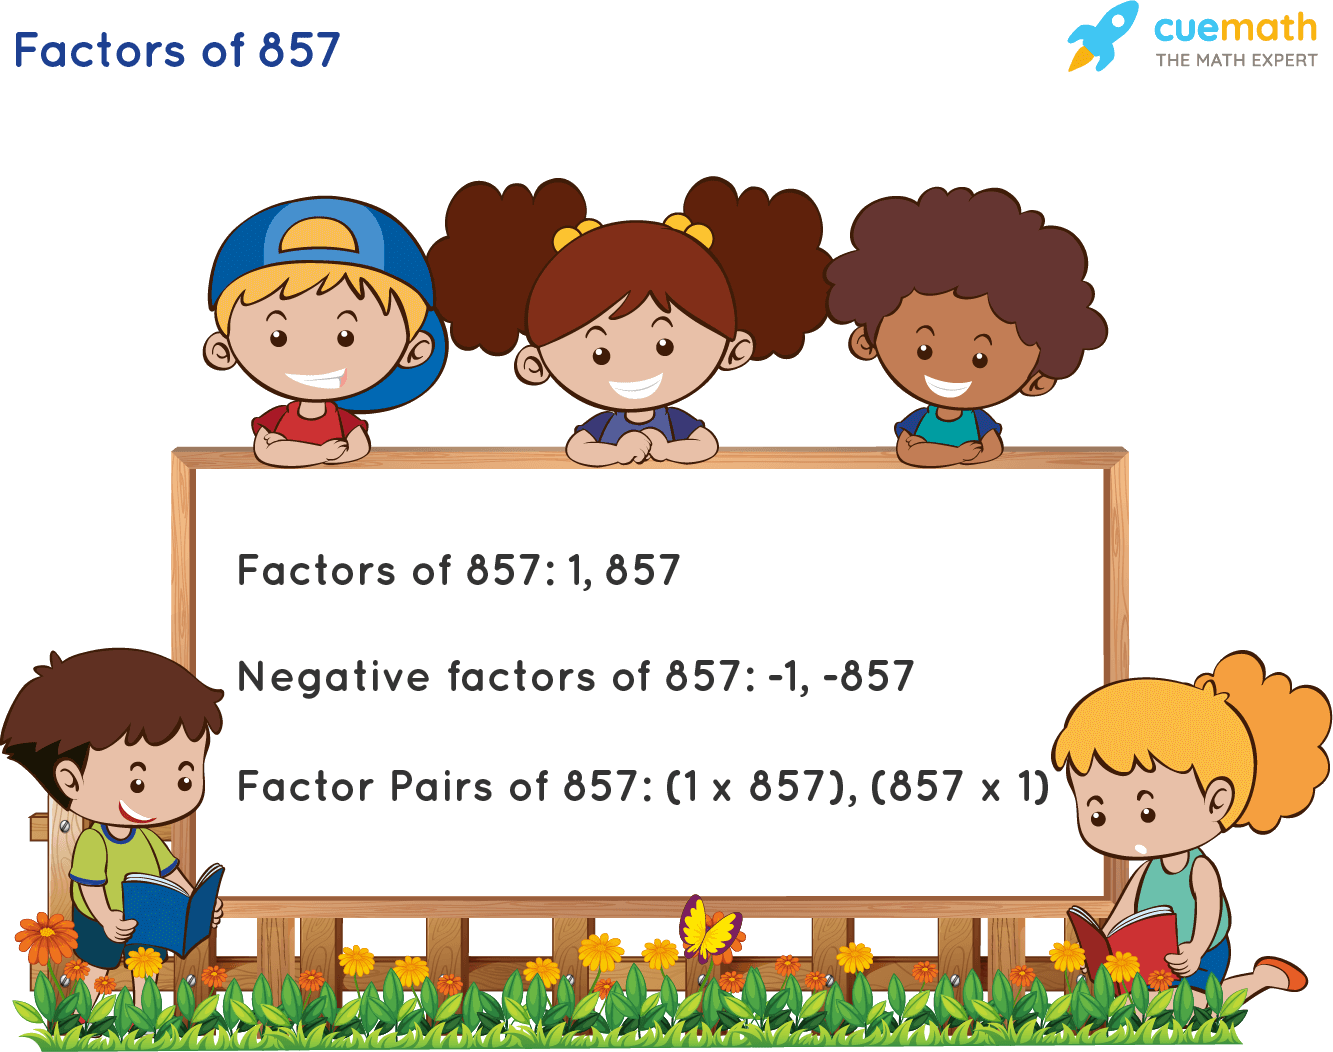 Factors of 857